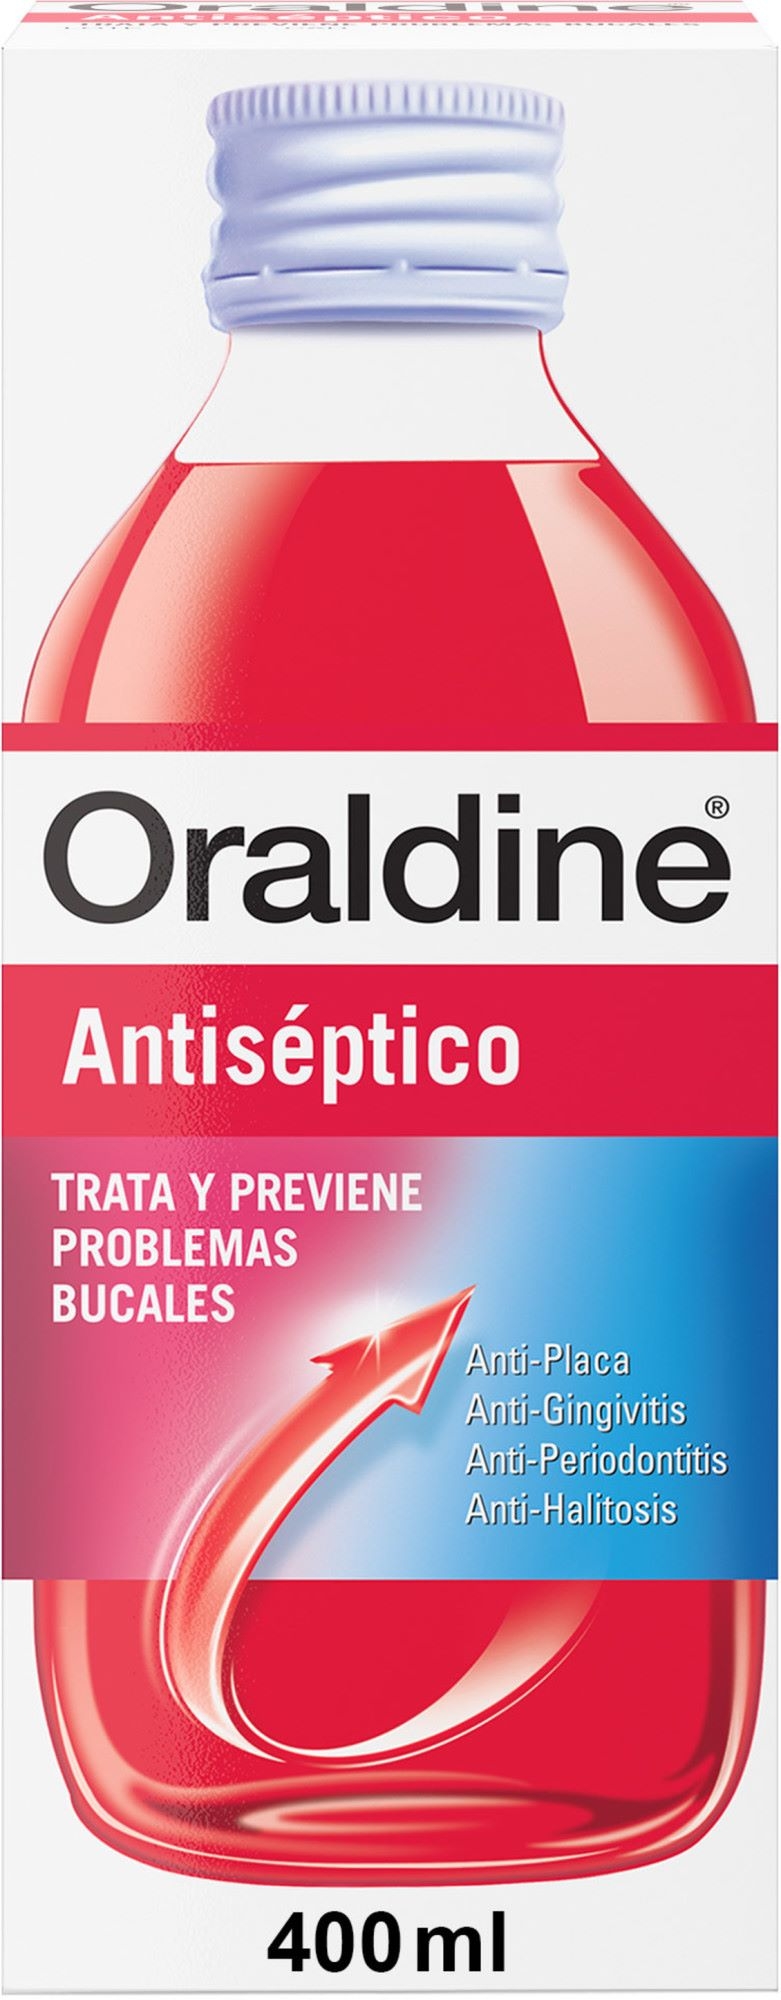 Oraldine Antiseptico 400 ml